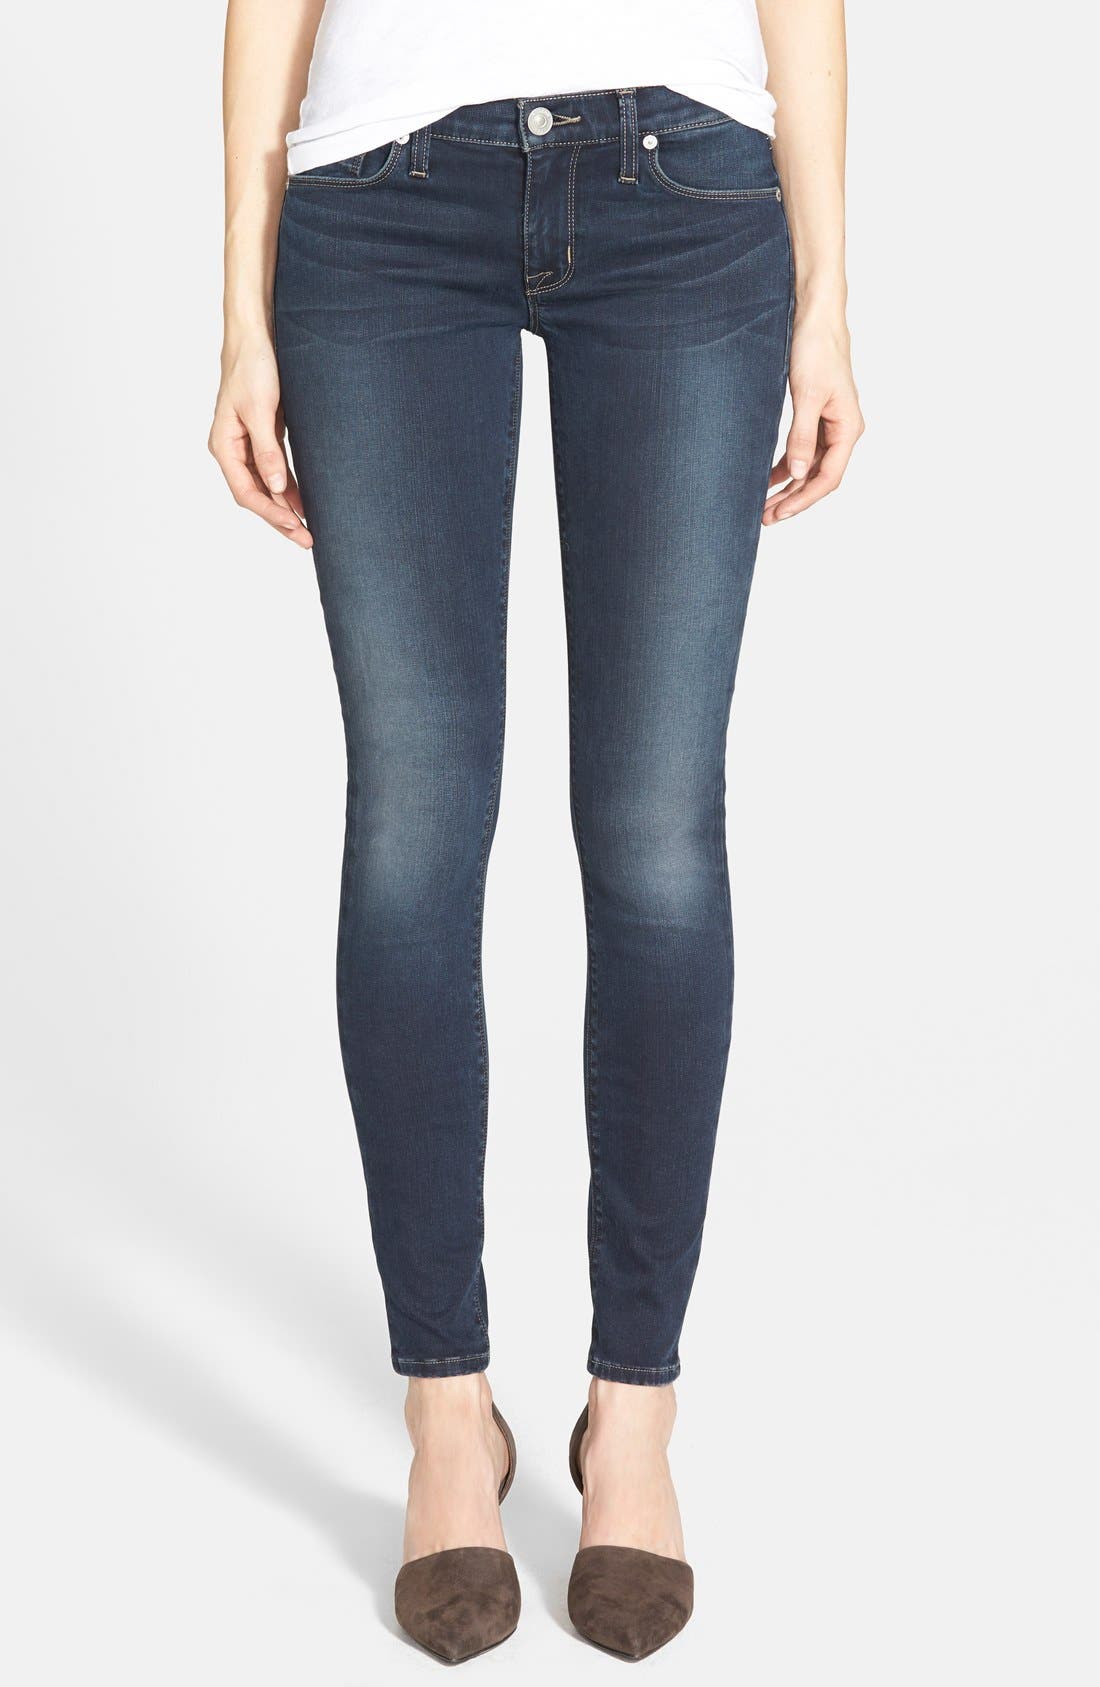 hudson jeans krista super skinny ankle jeans